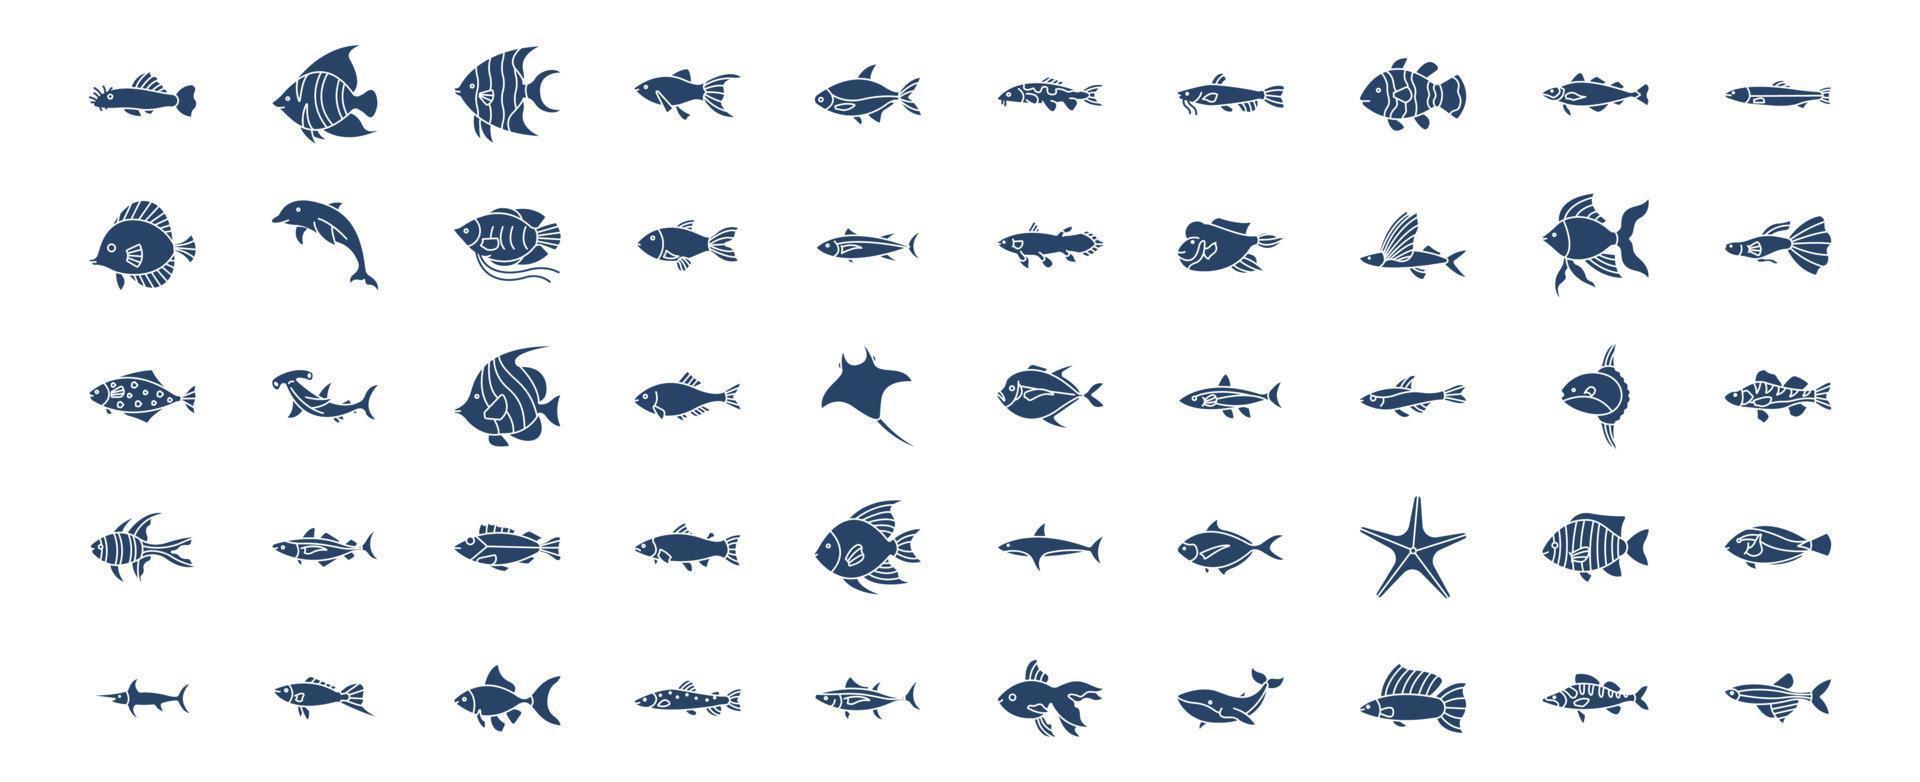 verzameling van pictogrammen verwant naar vissen, inclusief pictogrammen Leuk vinden dolfijn, ster vis, walvis, haai vis en meer. vector illustraties, pixel perfect reeks